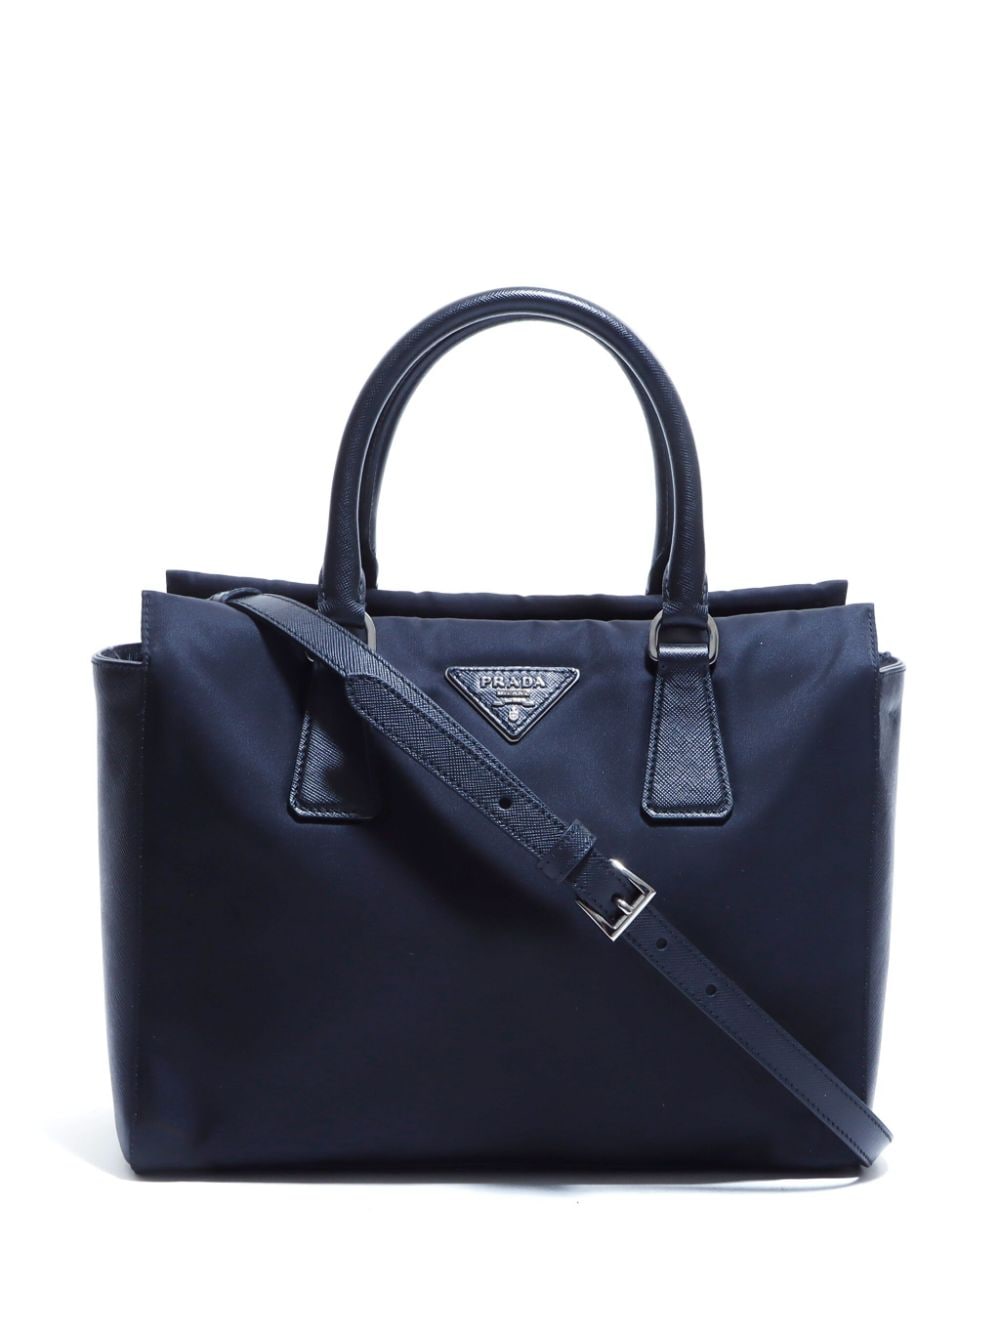 Pre-owned Prada Saffiano Lux Two-way Handbag In Black